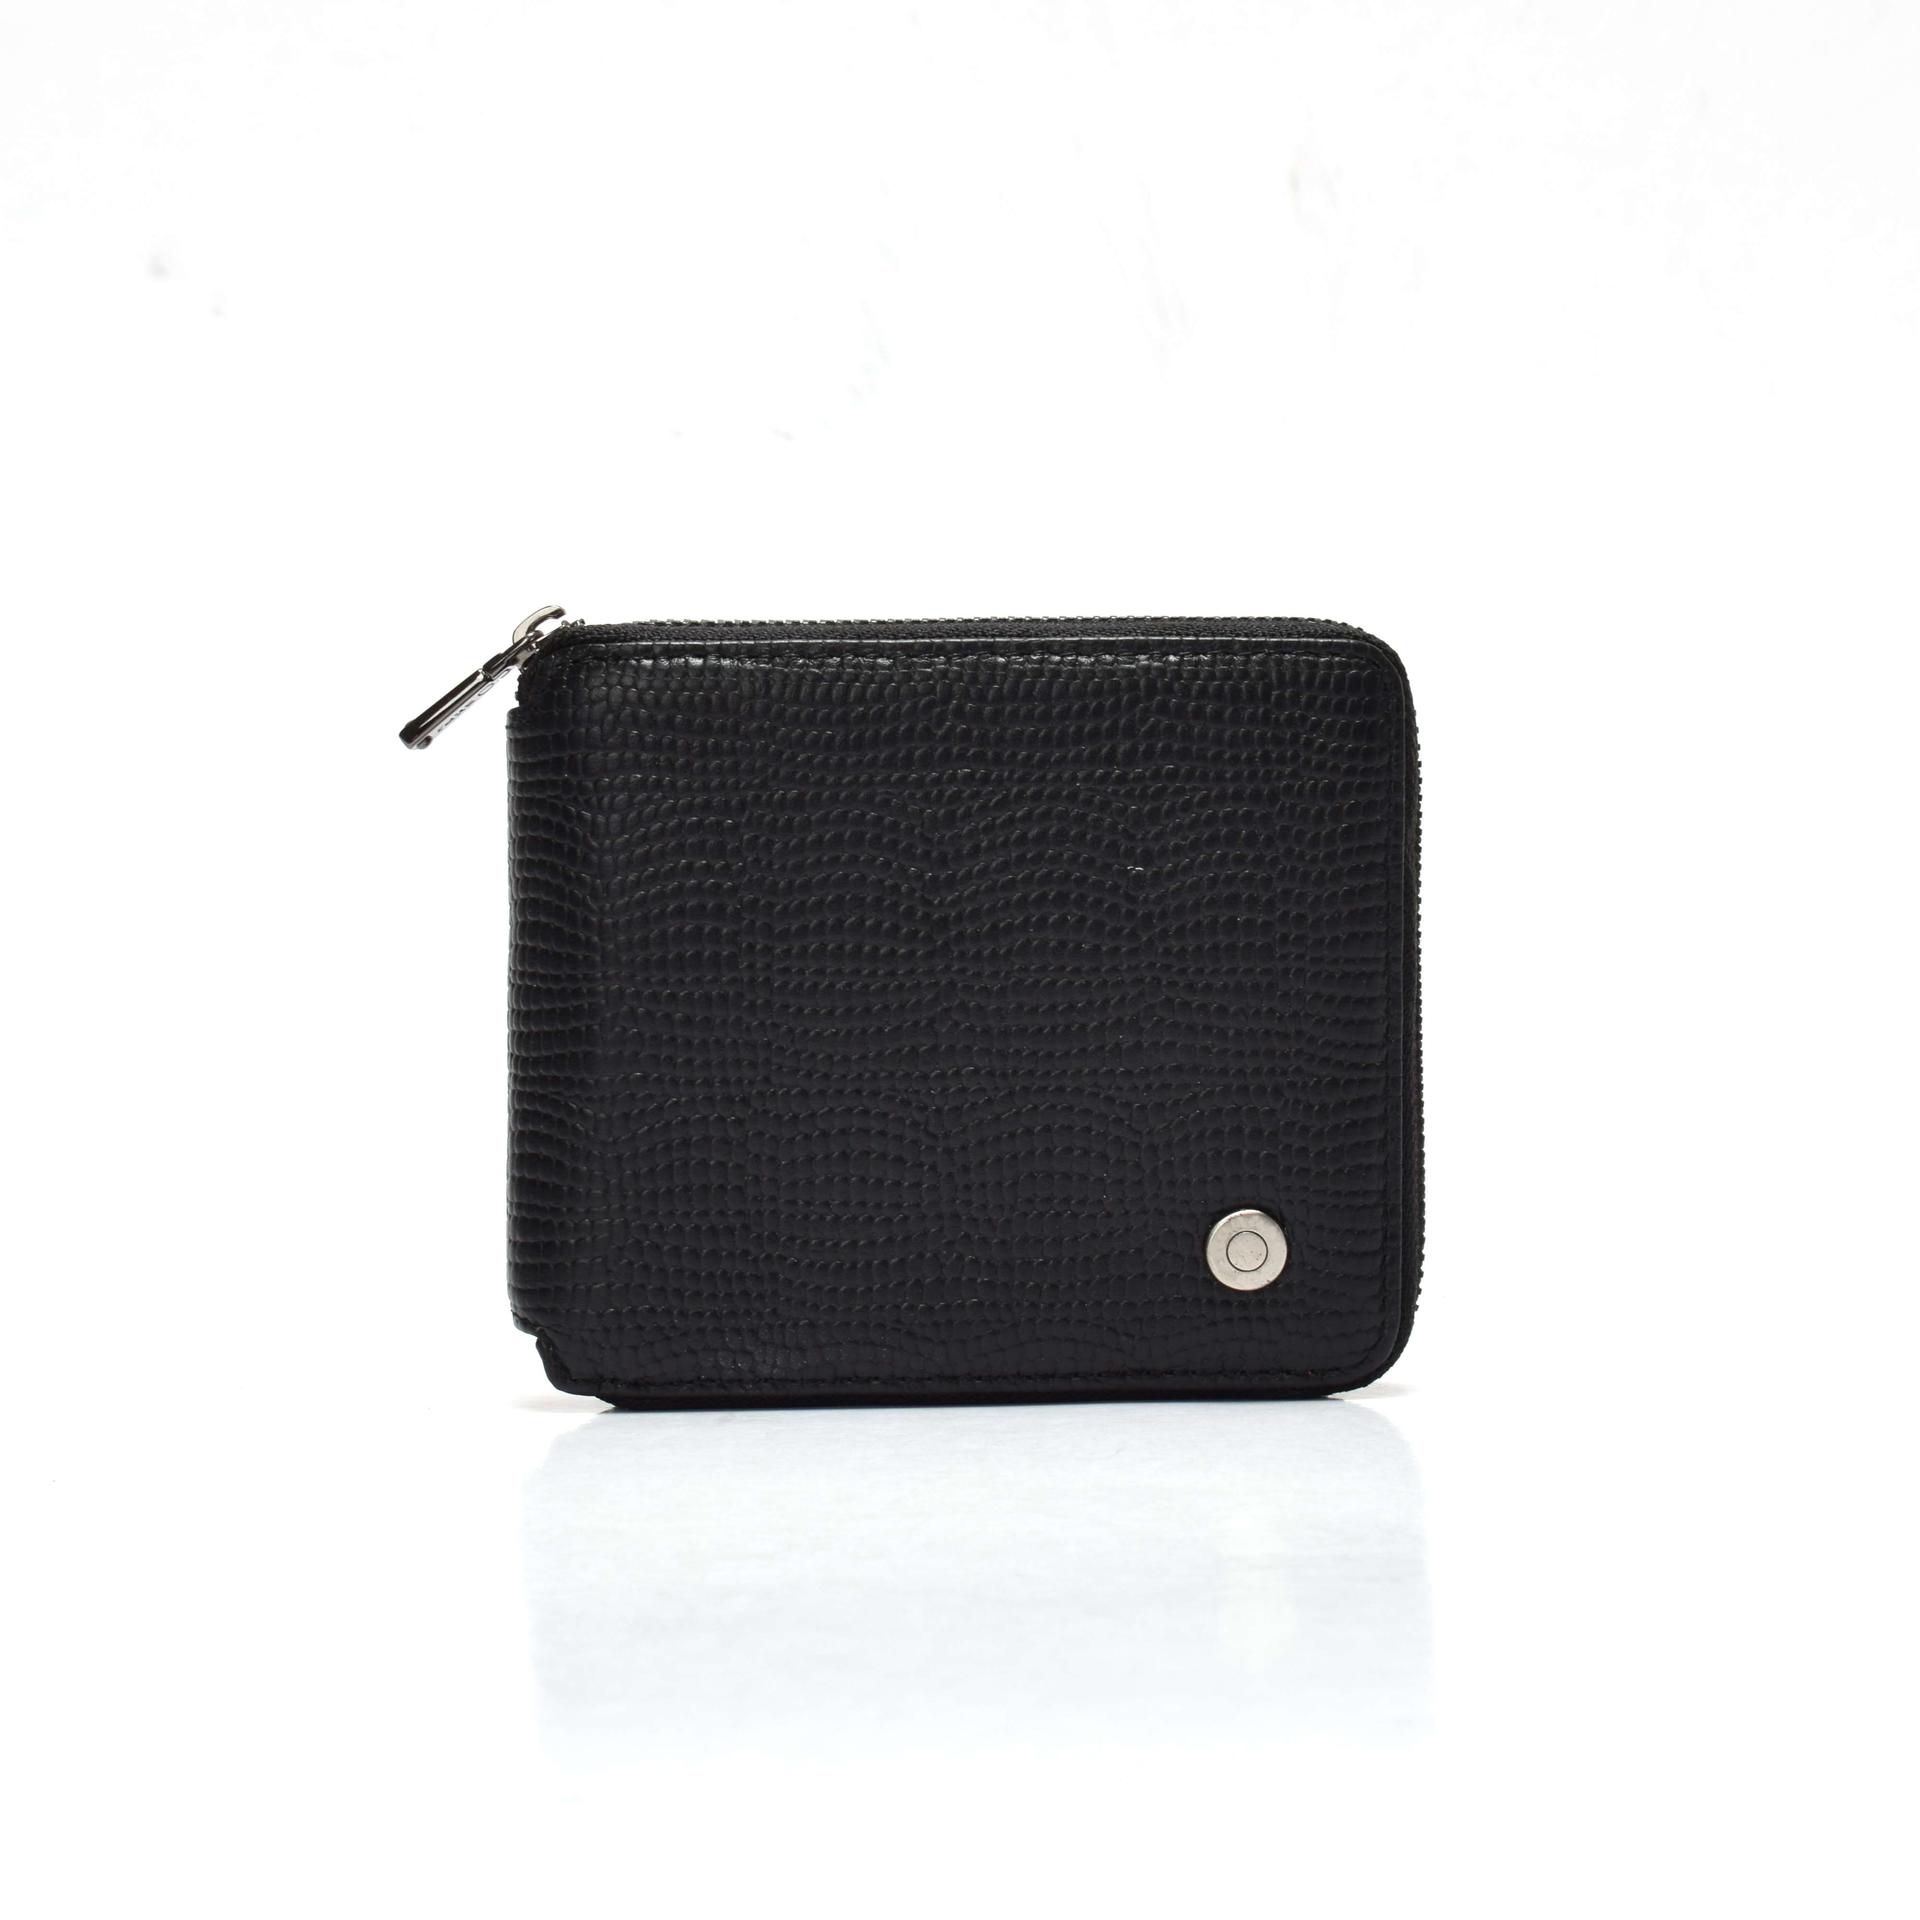 Square wallet for women  Lizard leather wallet  zipped wallet